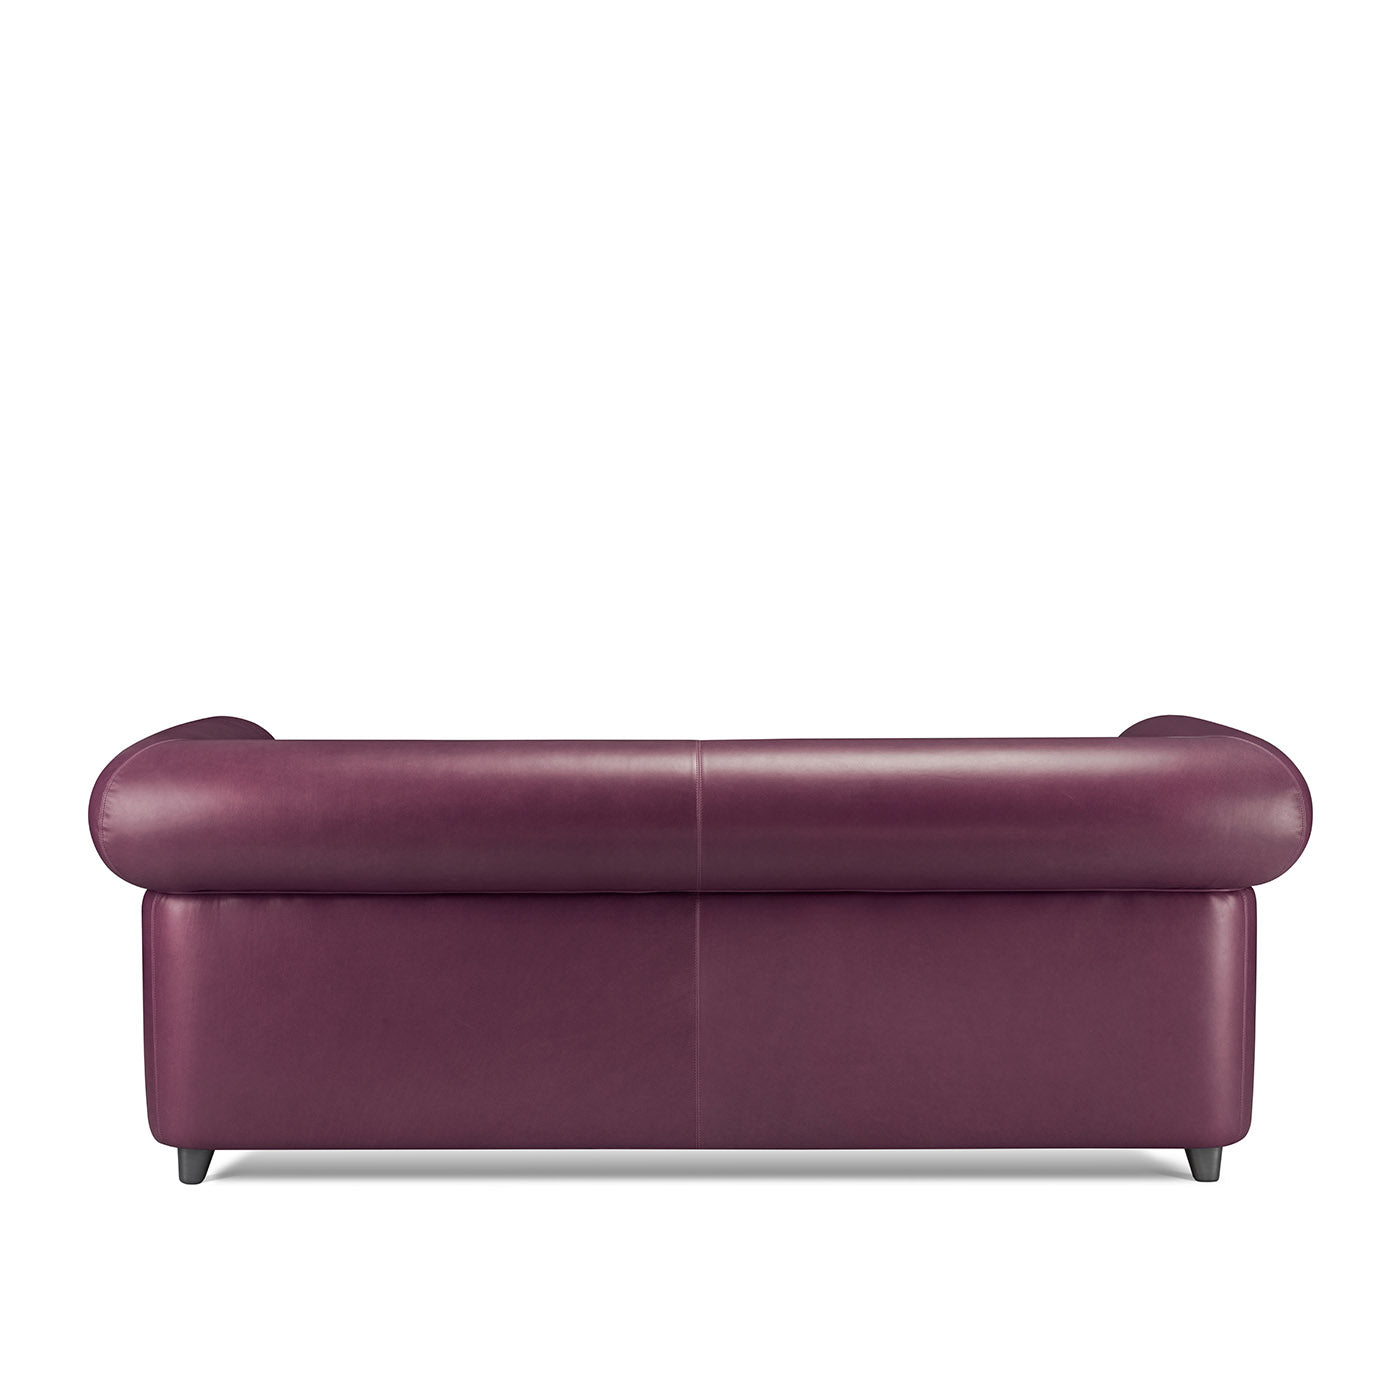 Portofino 2-Seater Purple Sofa by Stefano Giovannoni - Alternative view 3